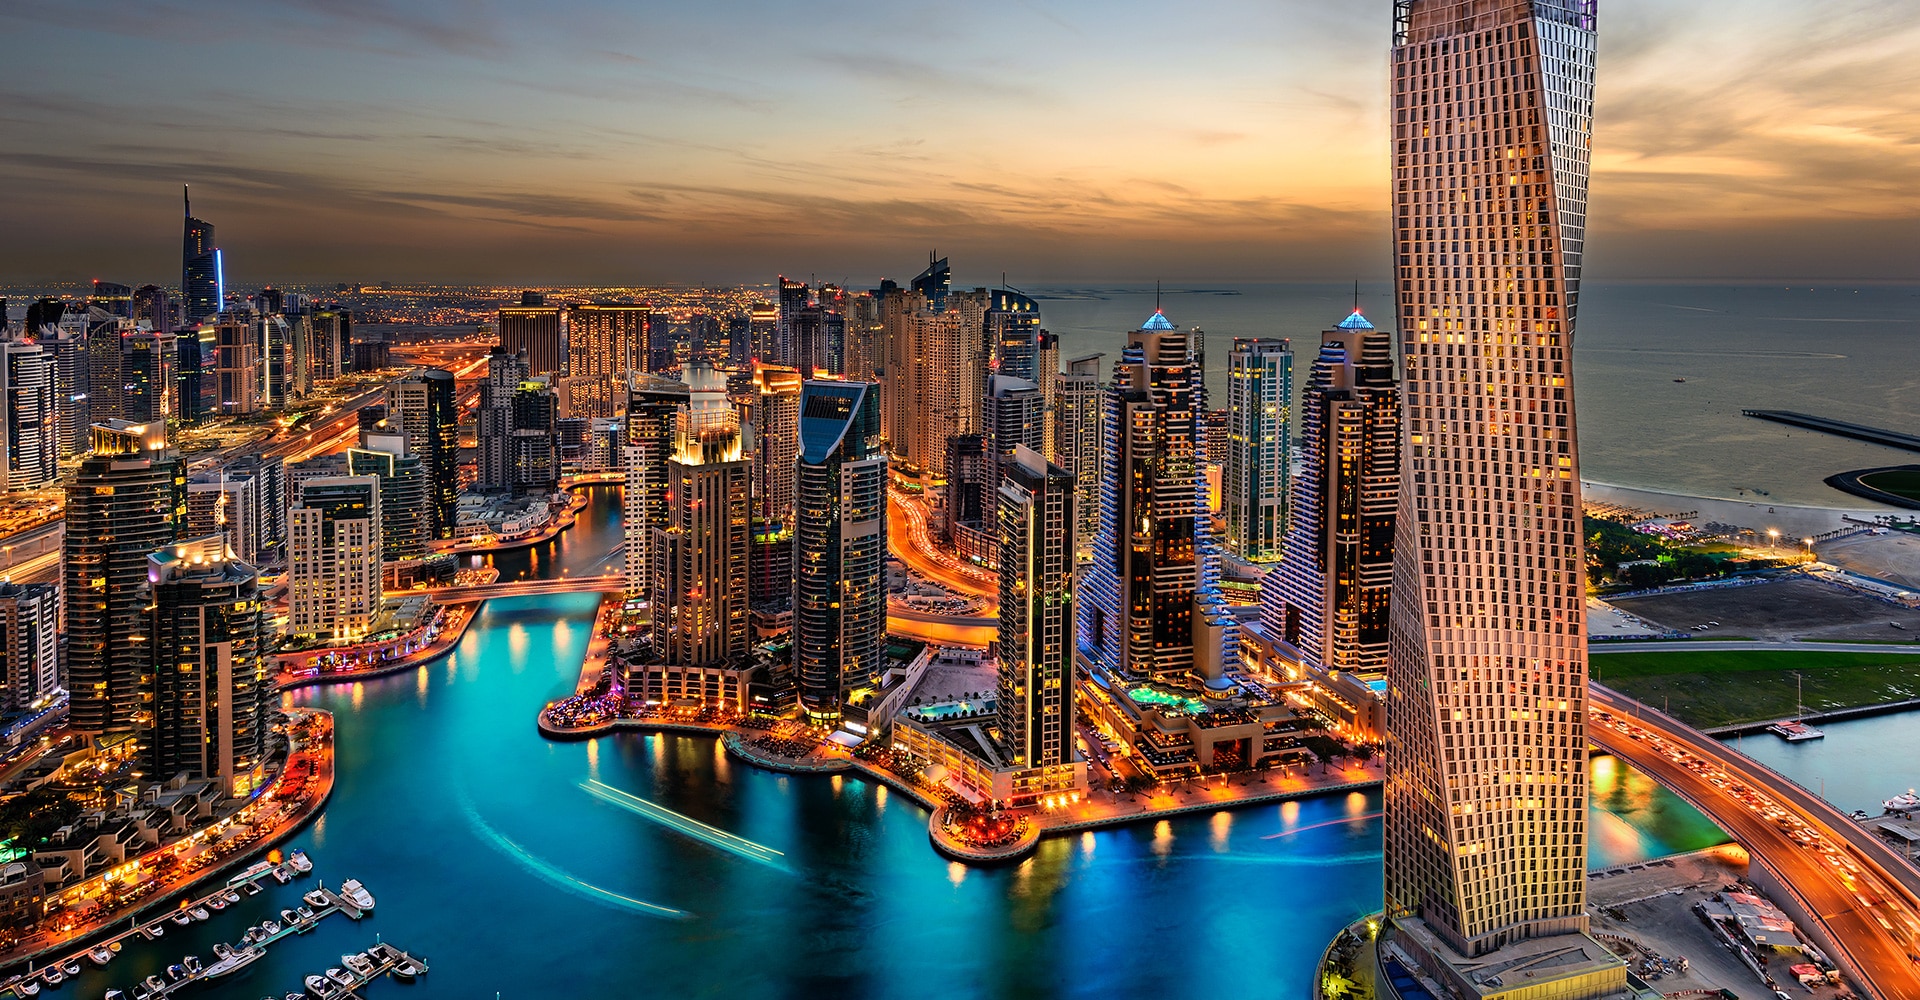 Bilionário de Dubai investe $ 10 milhões em Ethereum 2.0